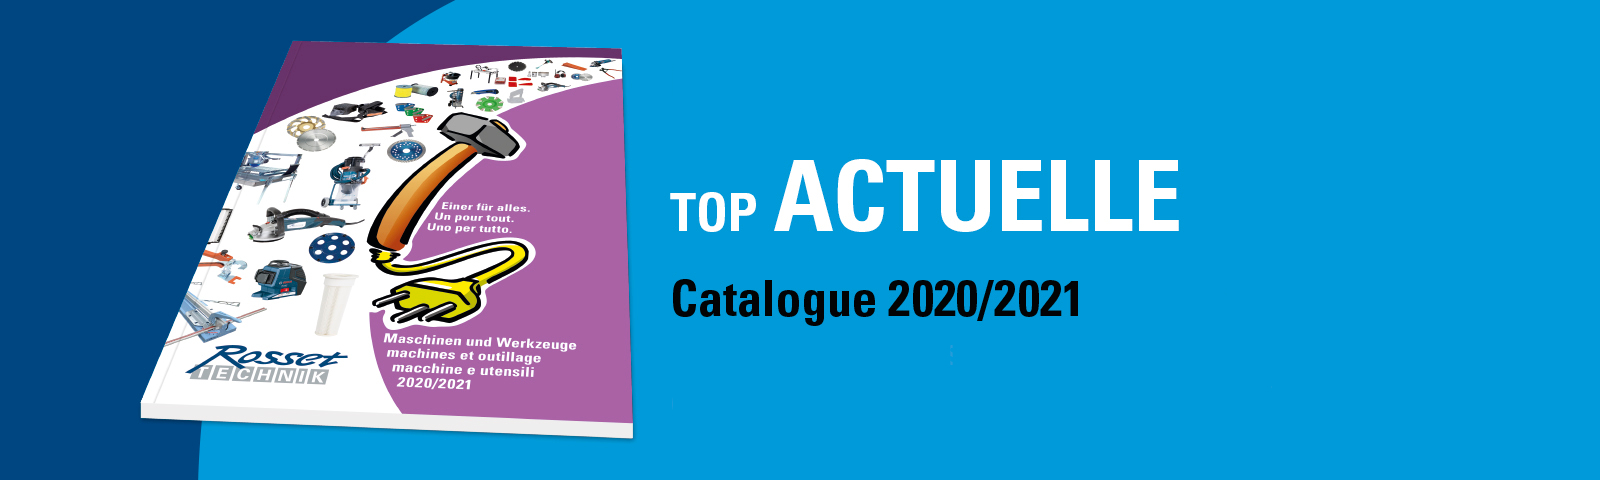 Katalog 2020/2021